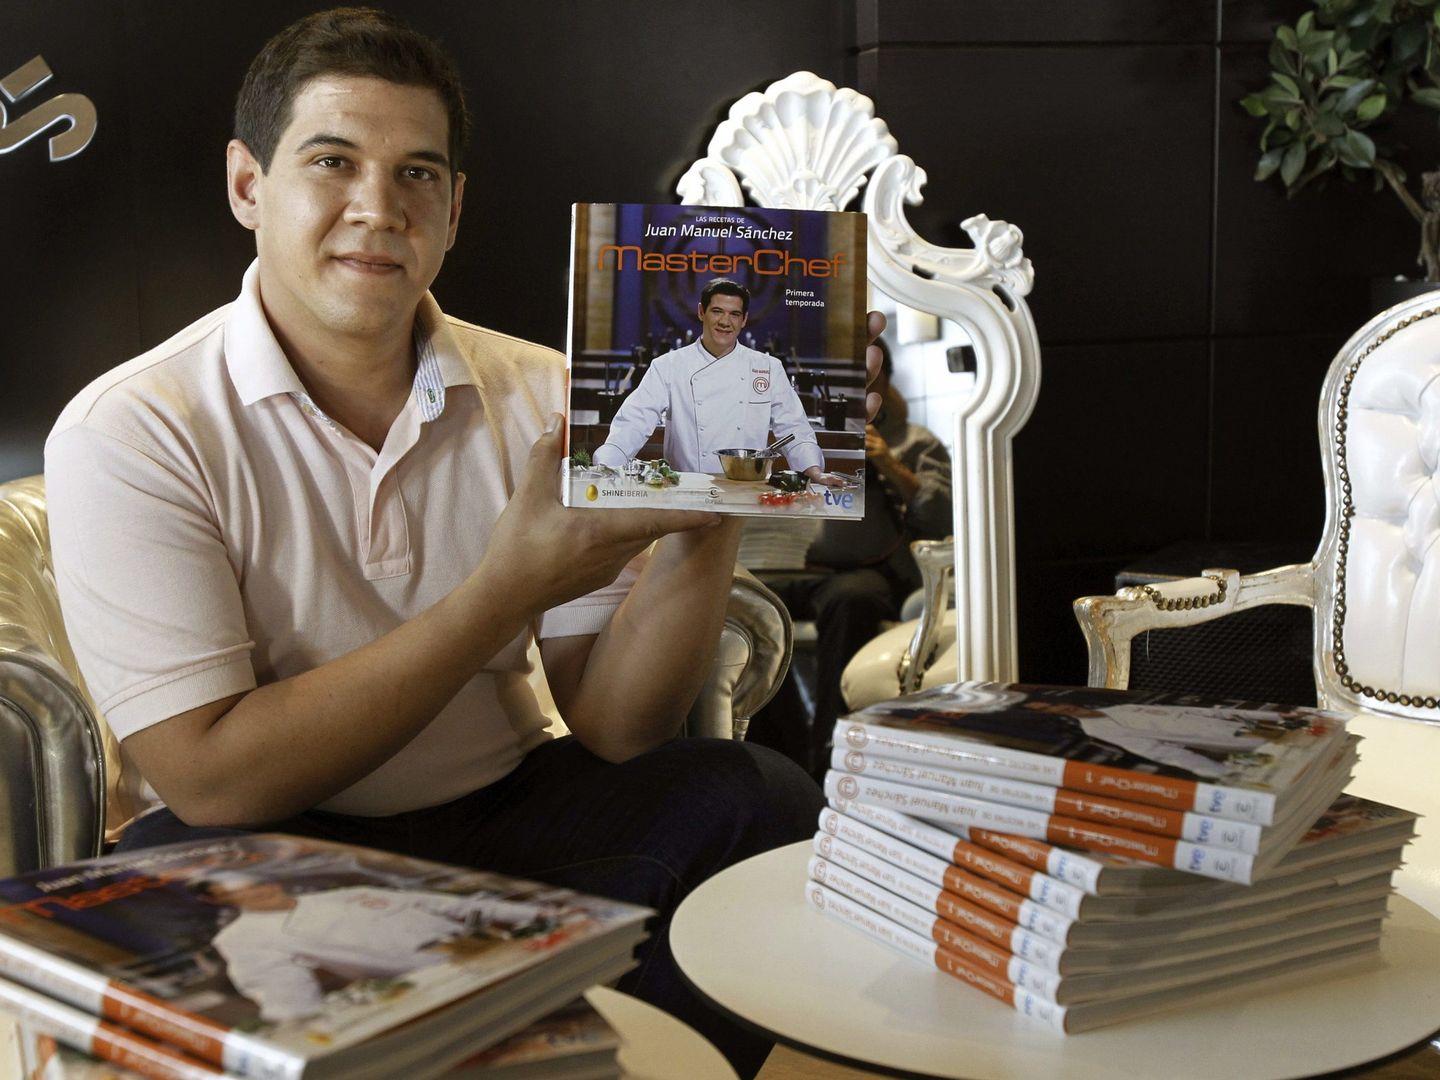 Juan Manuel pudo publicar su libro de recetas al ser el primer ganador de MasterChef (EFE)